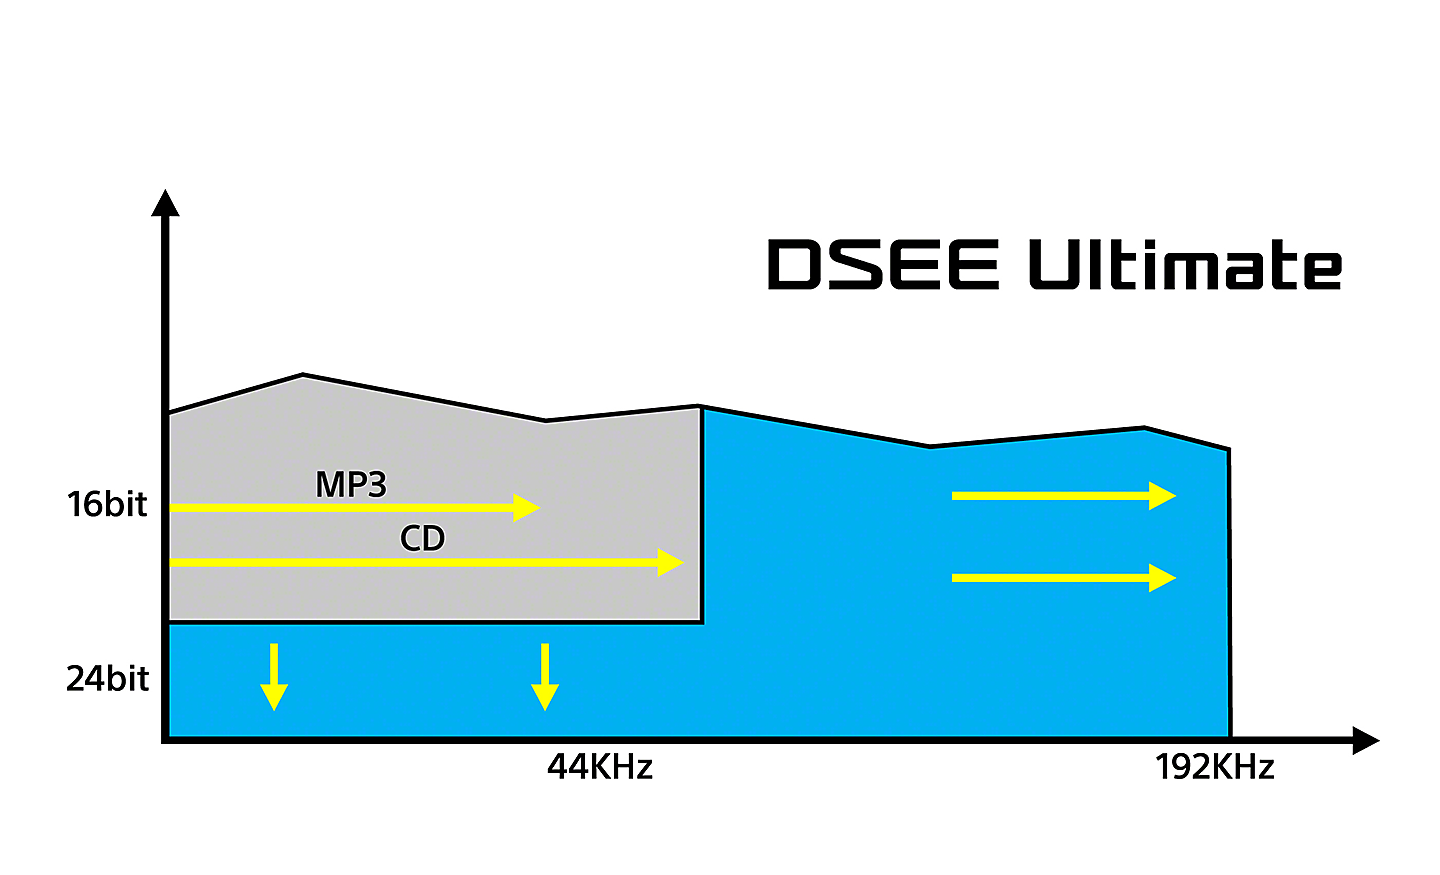 Graf znázorňuje vplyvy technológie DSEE Ultimate na digitálnu hudbu